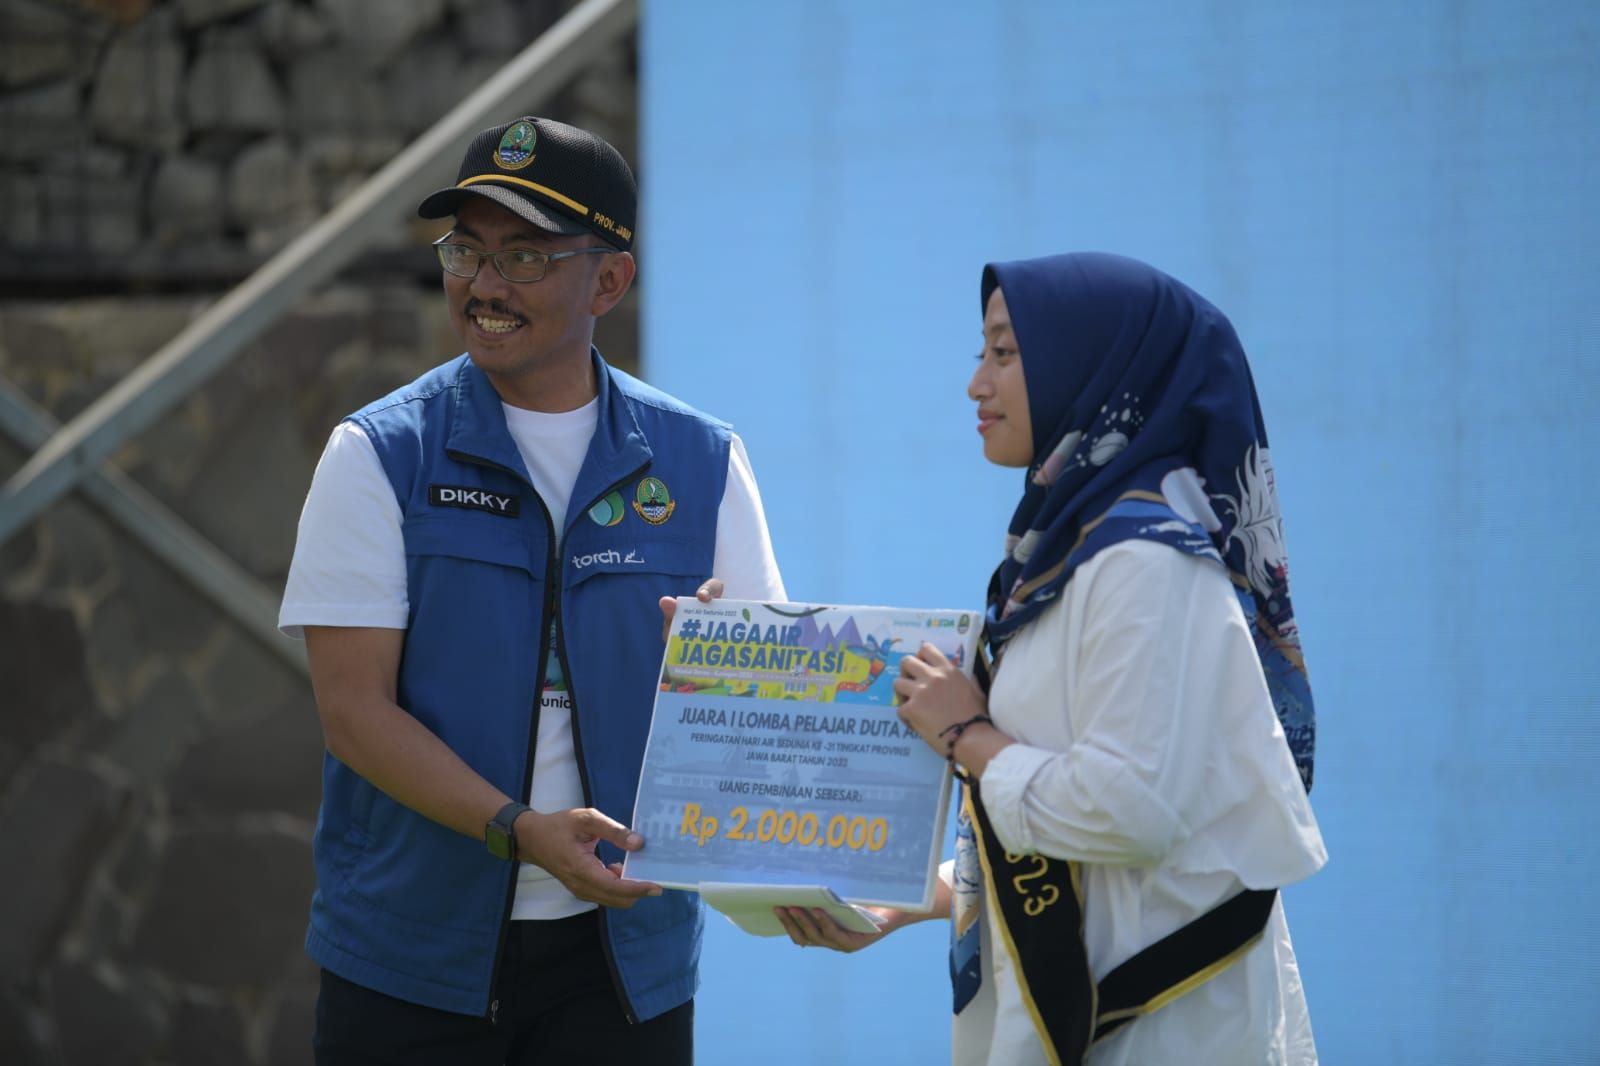 Kadis DSDA Jawa Barat Dikky Achmad Sidik menyerahkan hadiah pada Aretha Camryn Nur Haldis yang terpilih menjadi Pelajar Duta Air Jawa Barat 2023, di Waduk Darma, Kabupaten Kuningan, Rabu, 15 Maret 2023.